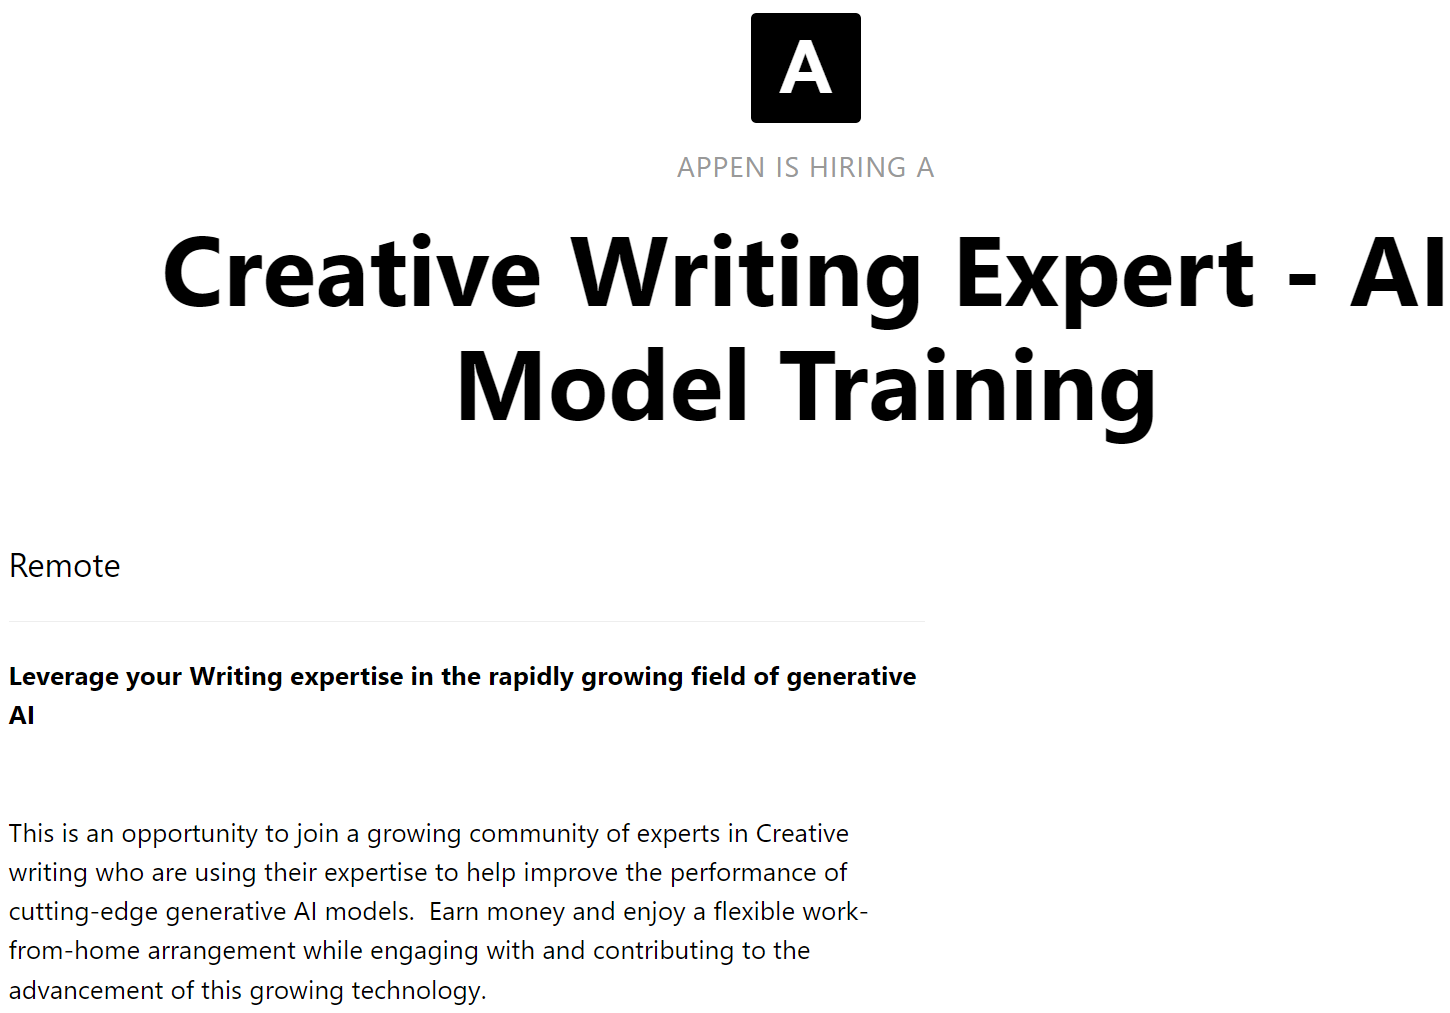 Anuncio de empleo para un experto en escritura creativa en formación de modelos de IA